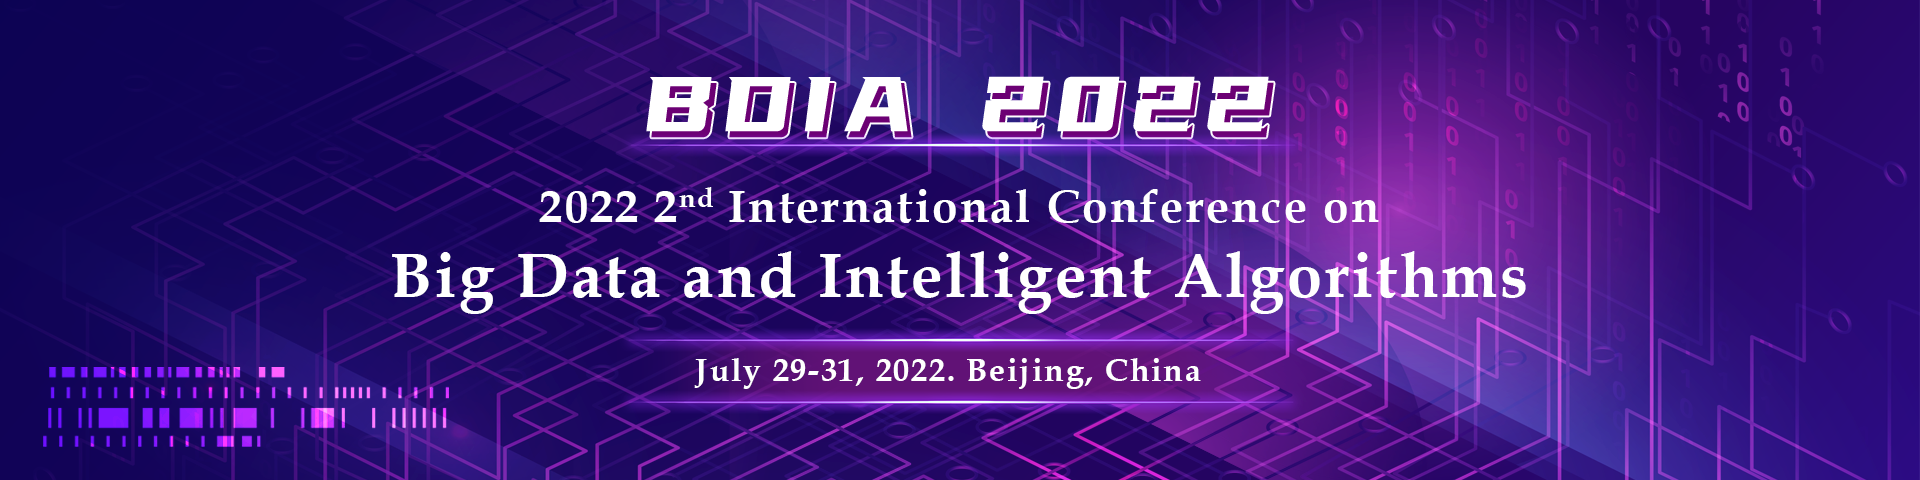 7月北京-BDIA 2022-banner（英）-陈军-20220301.png